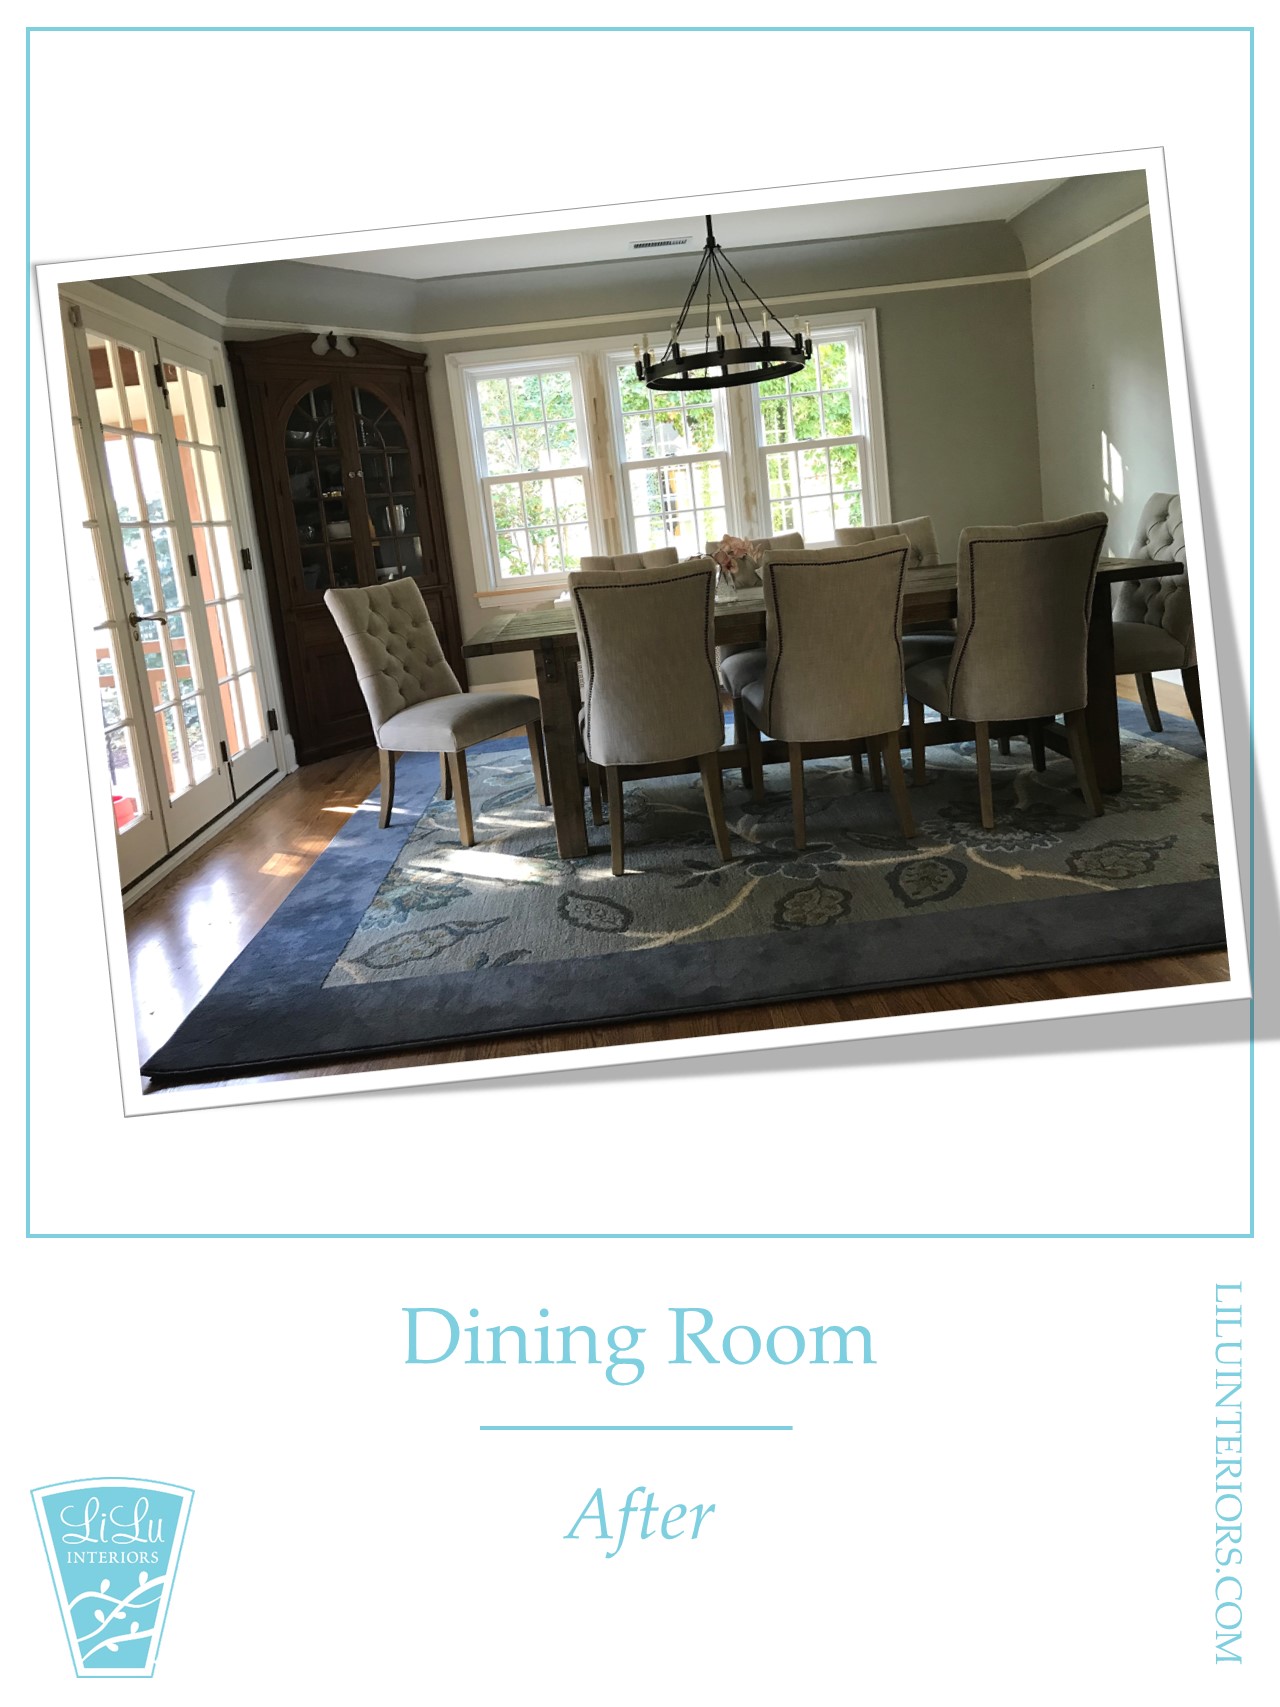 Edina-dining-room-after-Minneapolis-interior-designer-55405.jpg